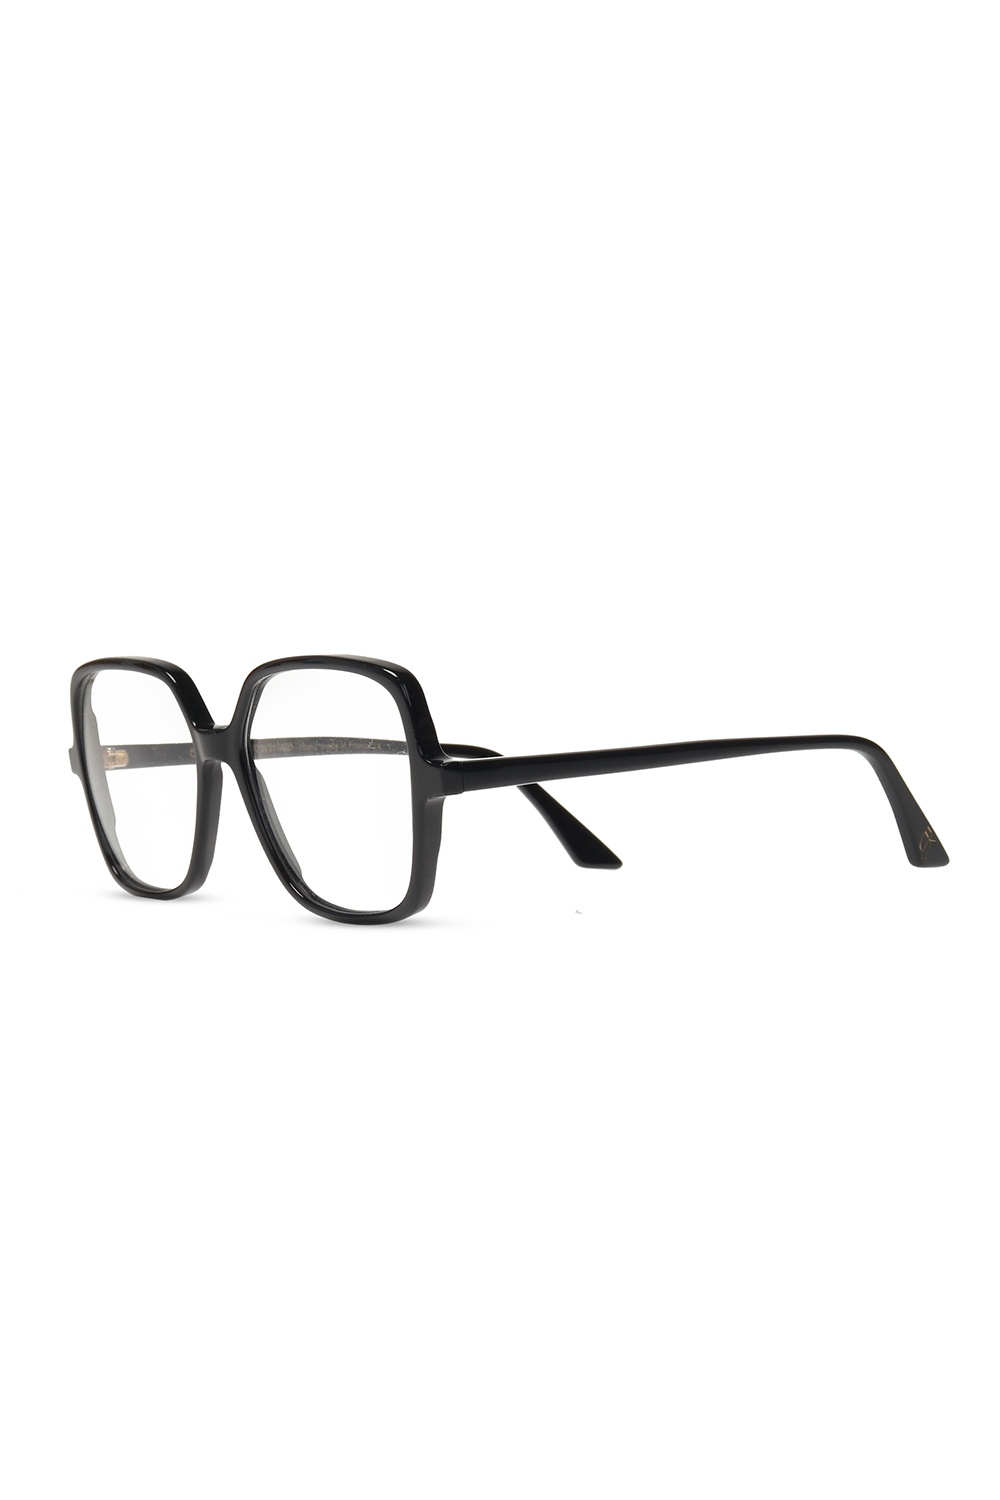 Emmanuelle Khanh Optical glasses with logo